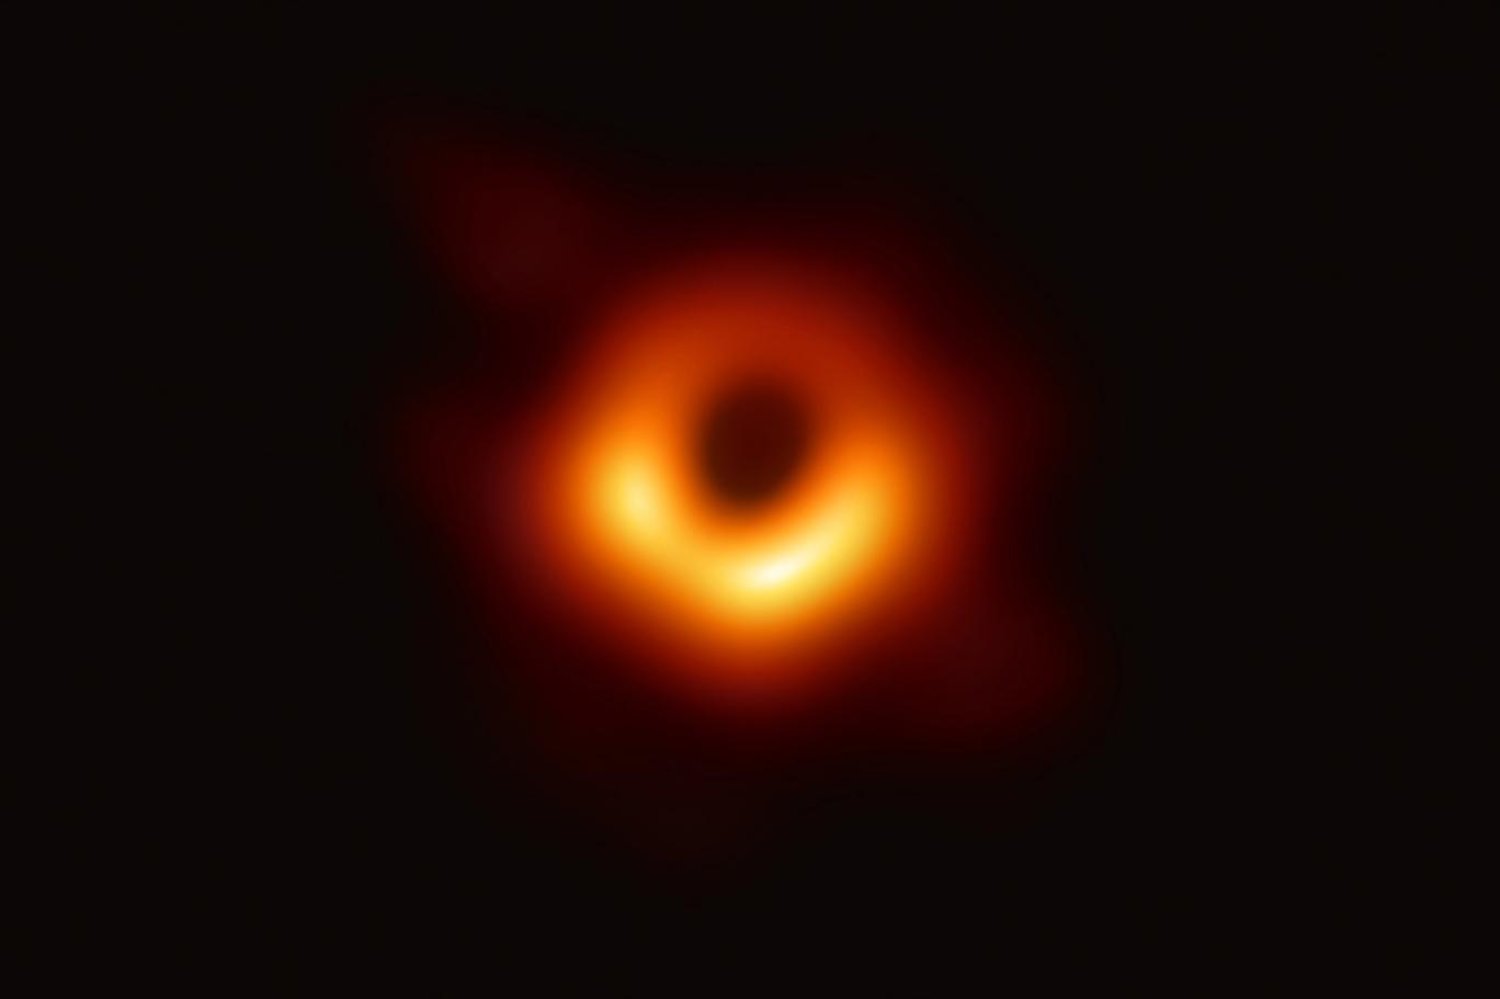 Messier 87 galaksisinin merkezindeki süper kütleli kara delik, 2019'da fotoğrafı çekilen ilk kara delik olmuştu (NASA)